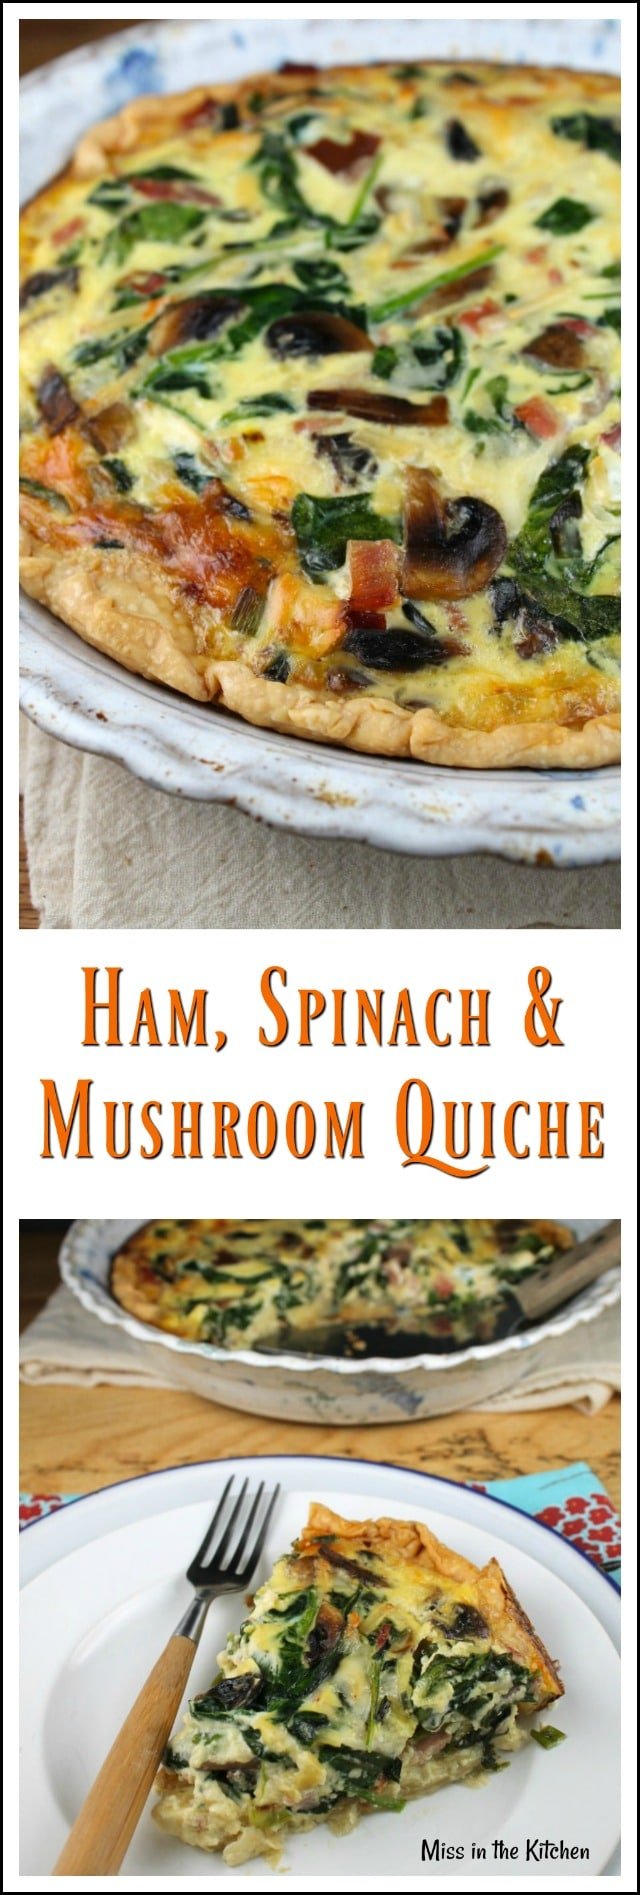 https://www.missinthekitchen.com/ham-spinach-mushroom-quiche/ham-spinach-mushroom-quiche-photo-collage/